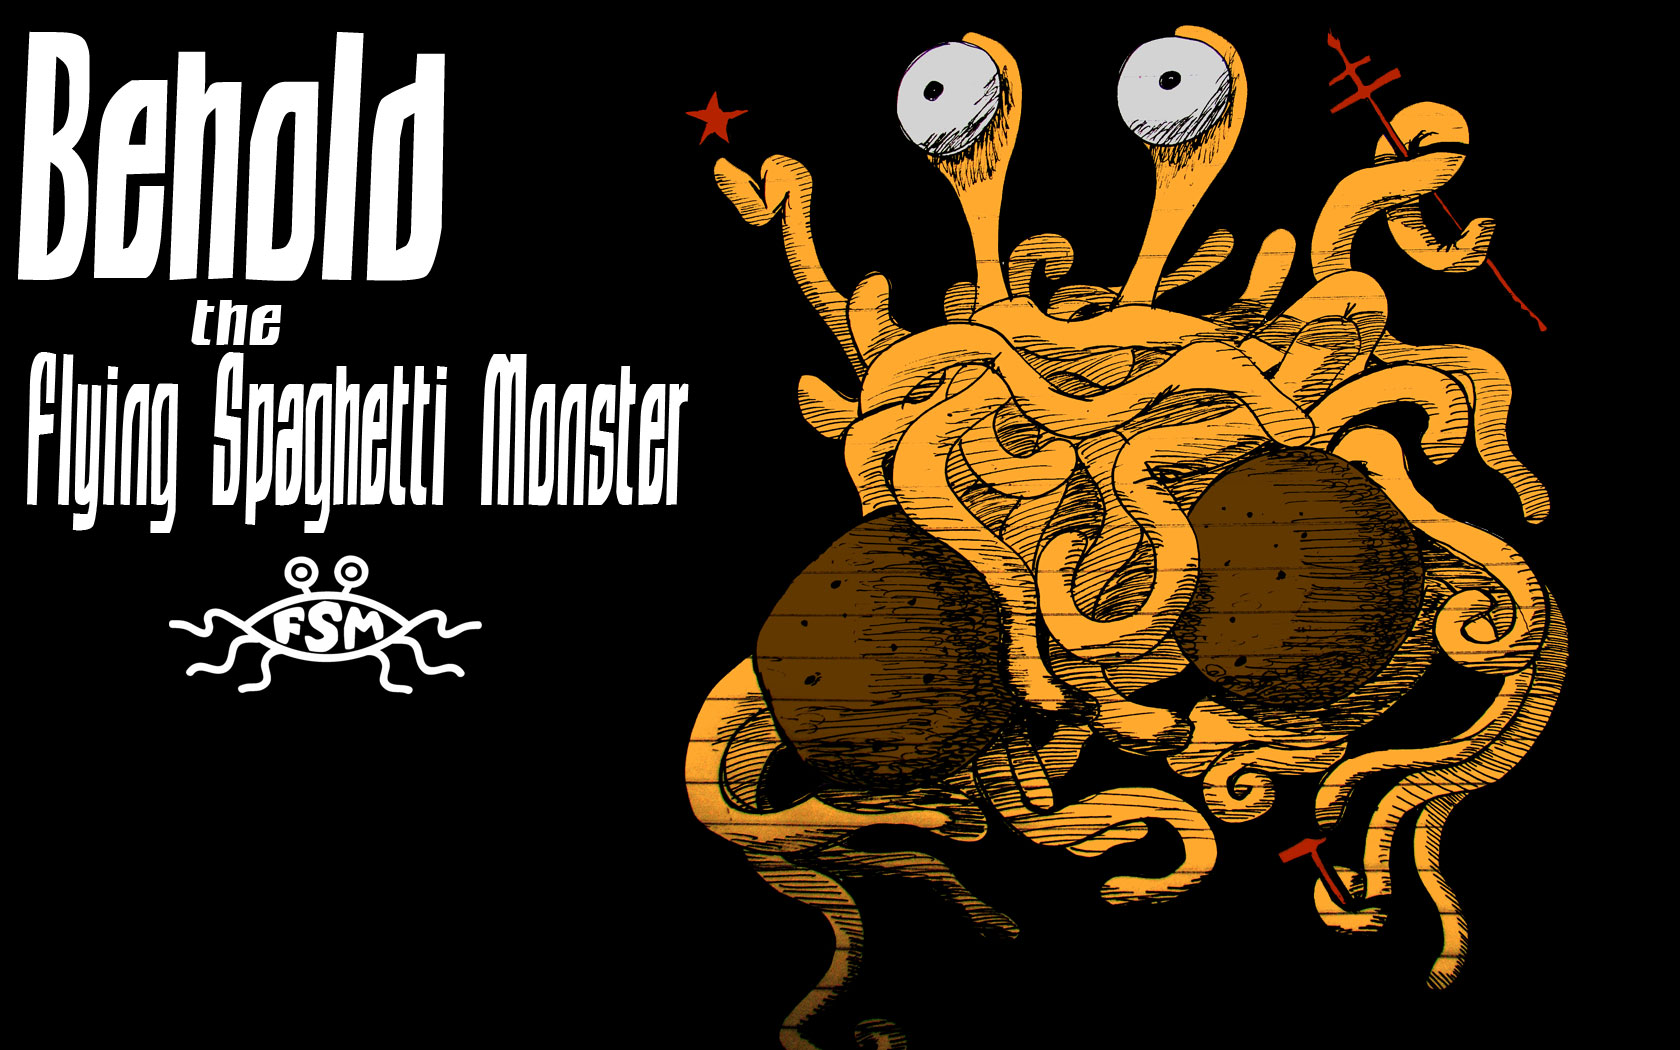 Andre S Wallpaper Church Of The Flying Spaghetti Monster